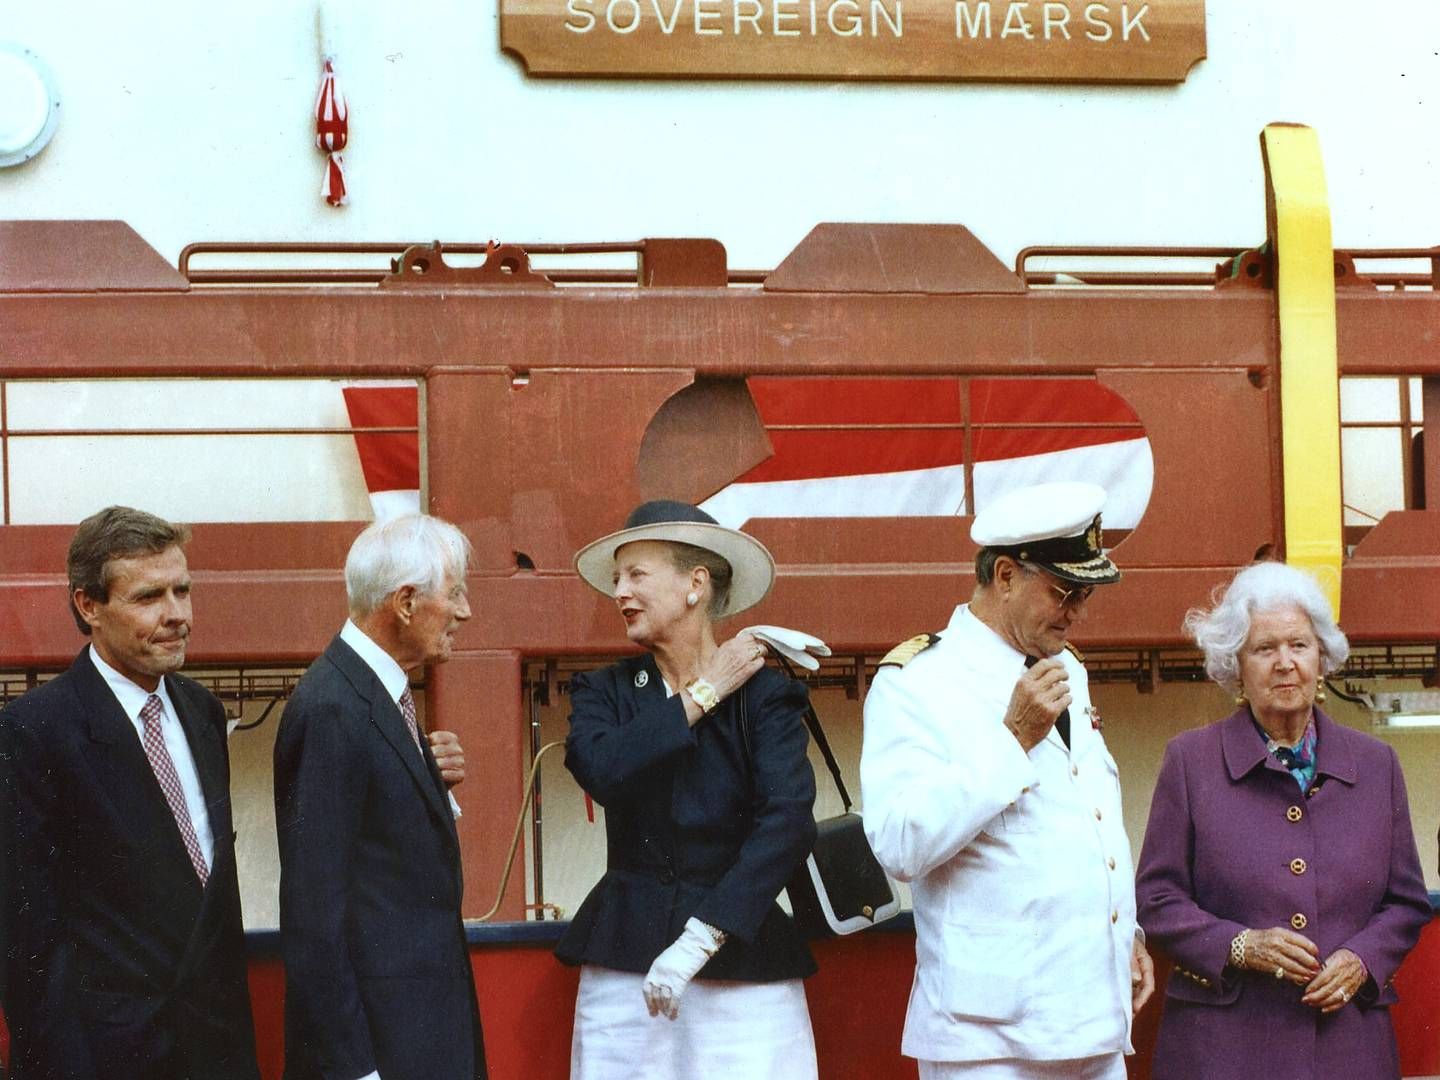 Daværende koncernchef Jess Søderberg, Mærsk Mc-Kinney Møller, Dronning Margrethe, Prins Henrik og Emma Mc-Kinney Møller deltog i ceremonien, da skibet blev navngivet i 1997. | Foto: Carsten Andreasen/Ritzau Scanpix